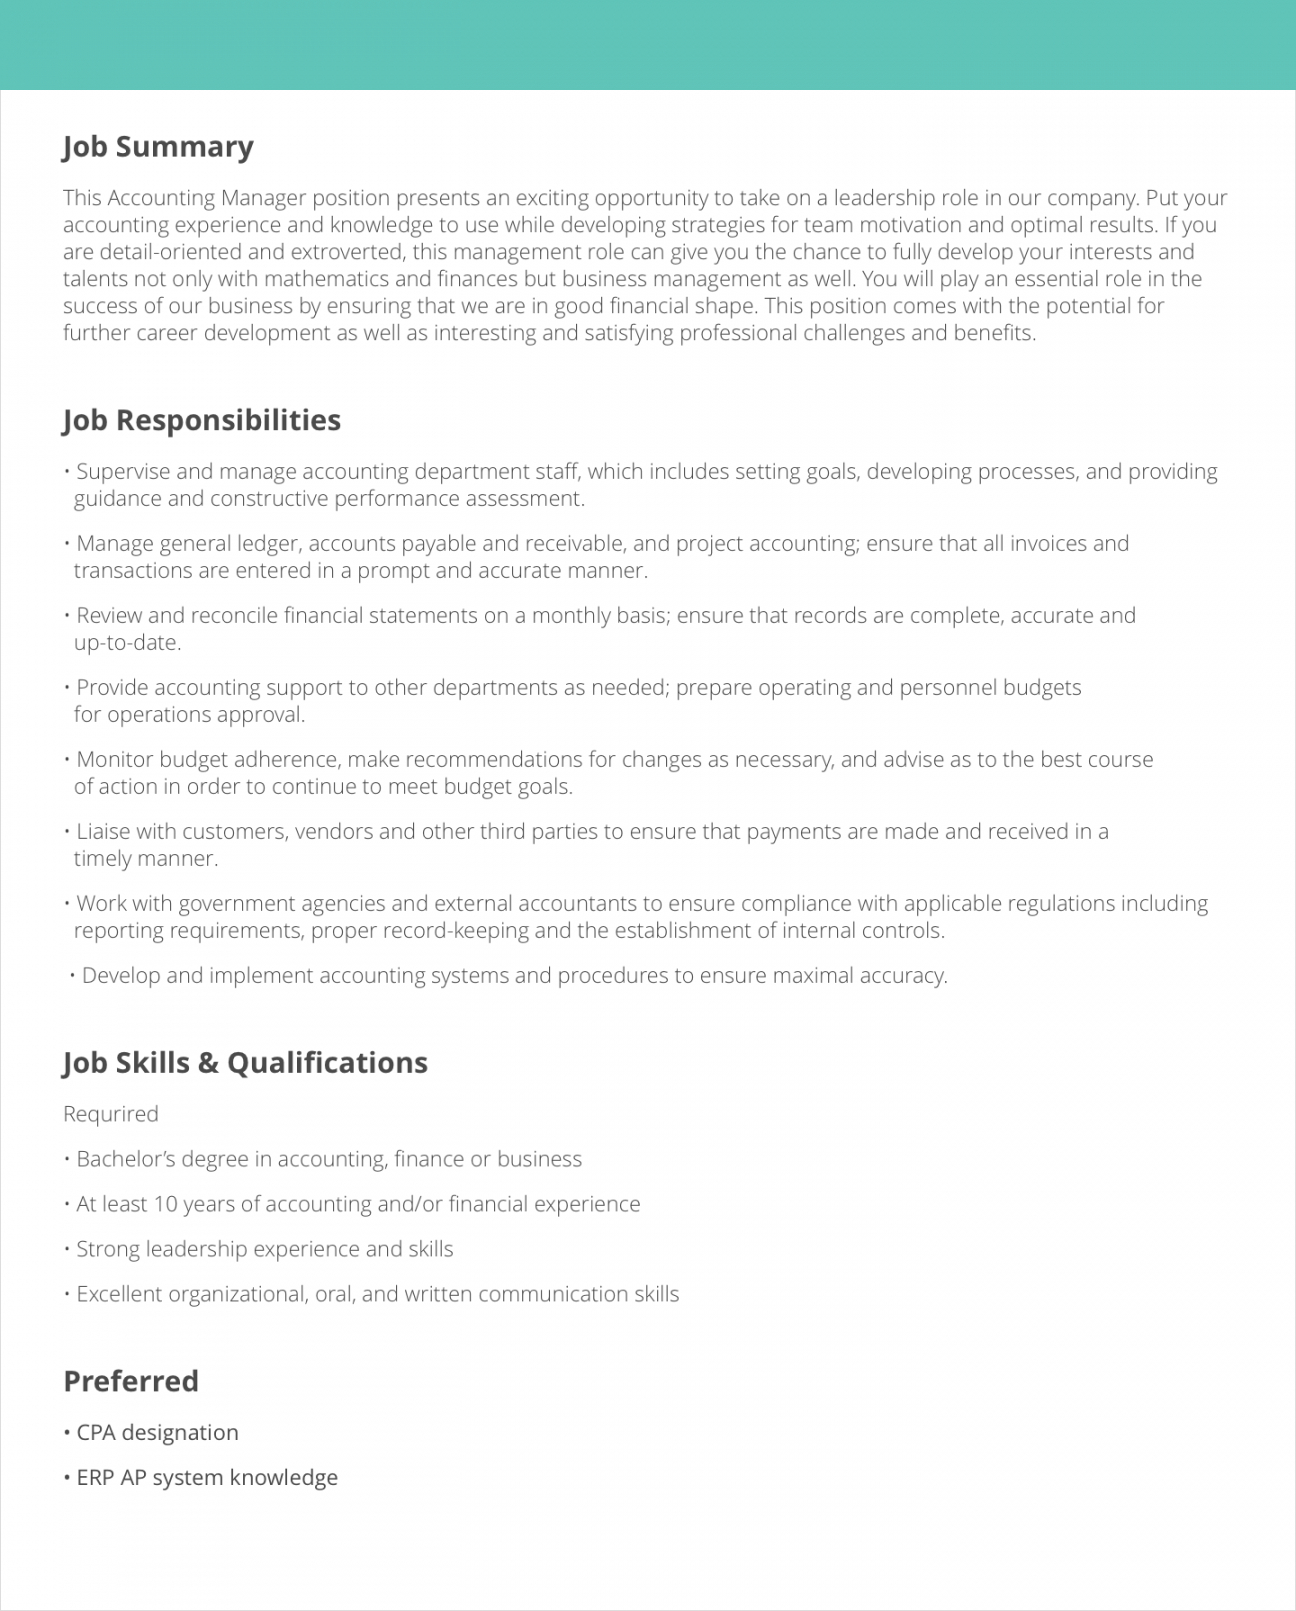 job description samples &amp; examples  livecareer professional job description template pdf